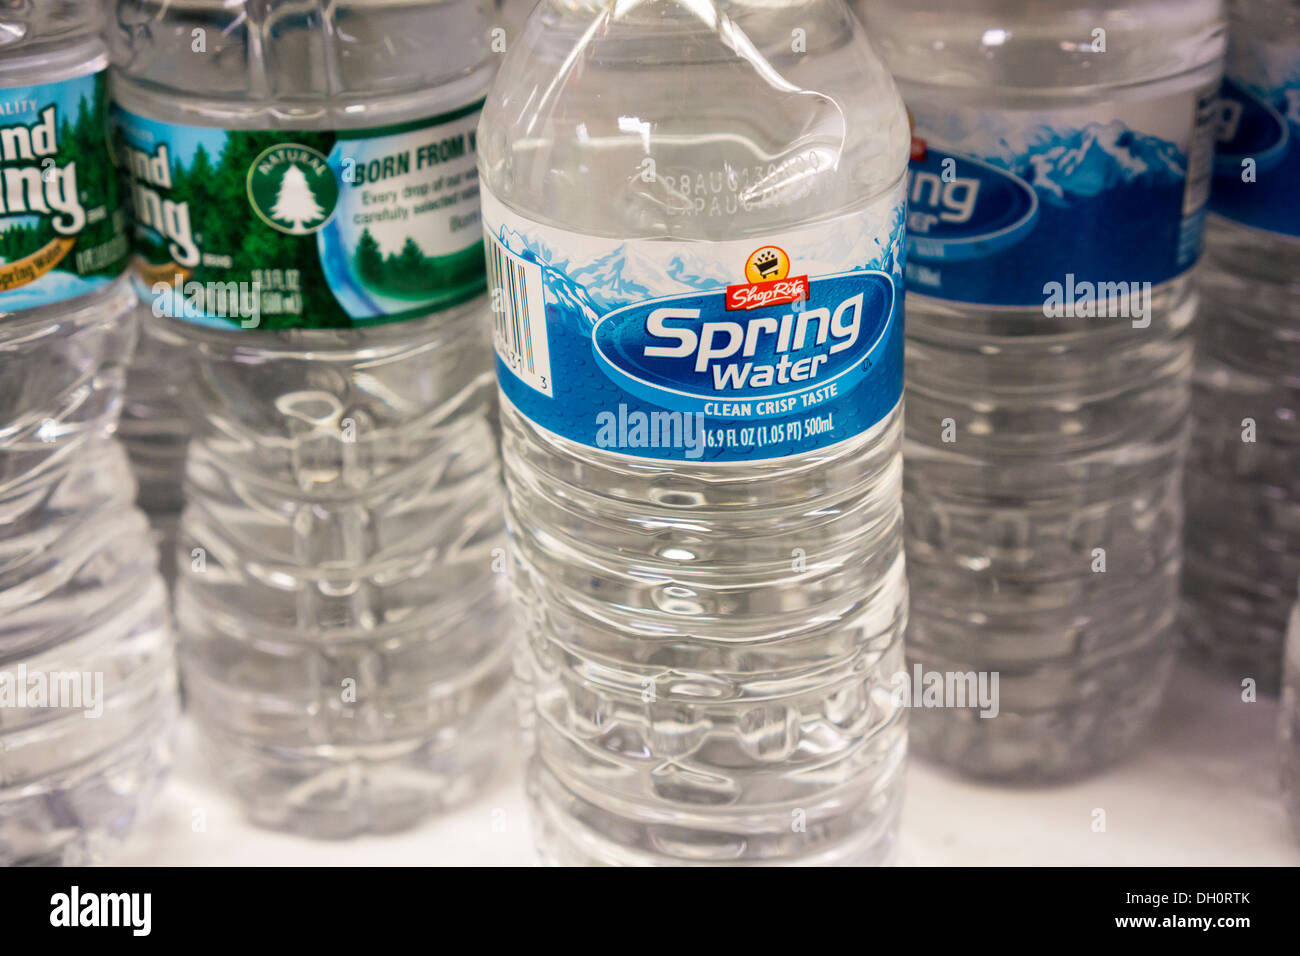 House brand acqua imbottigliata è visto in un supermercato a New York Foto Stock